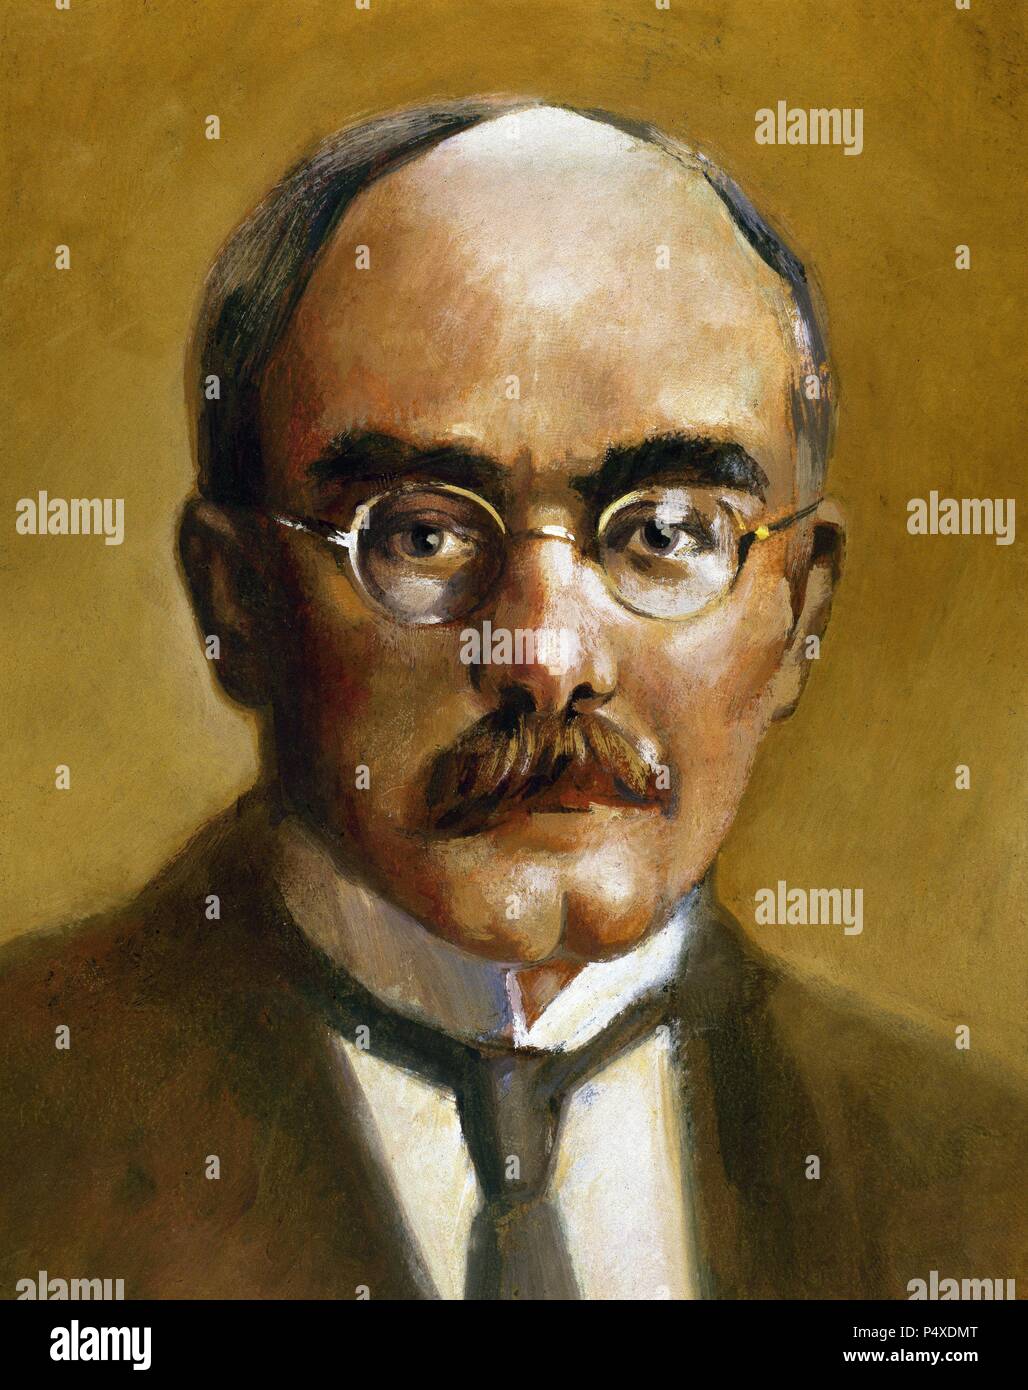 Kipling, Rudyard (1865-1936). Englischer Schriftsteller, Dichter und Schriftsteller. Nobelpreis für Literatur im Jahr 1907. Stockfoto